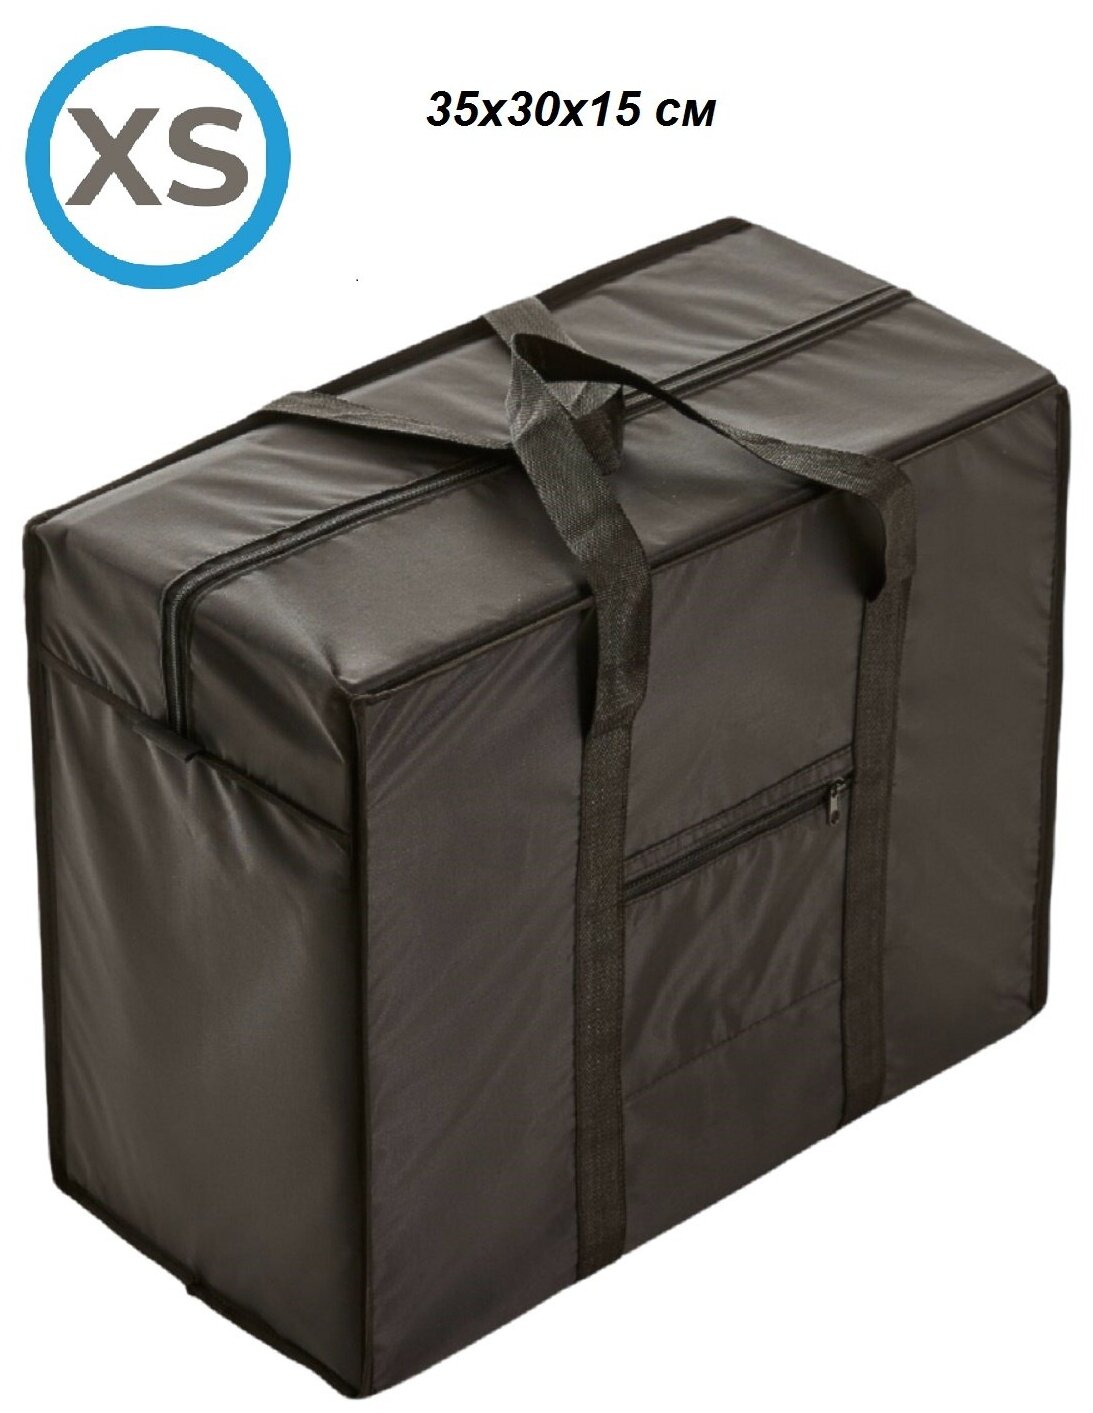 Сумка-баул Российский производитель сумка хозяйственная черная для ручной клади дорожная текстильная размер XS (0), 35х30х15 см - фотография № 1